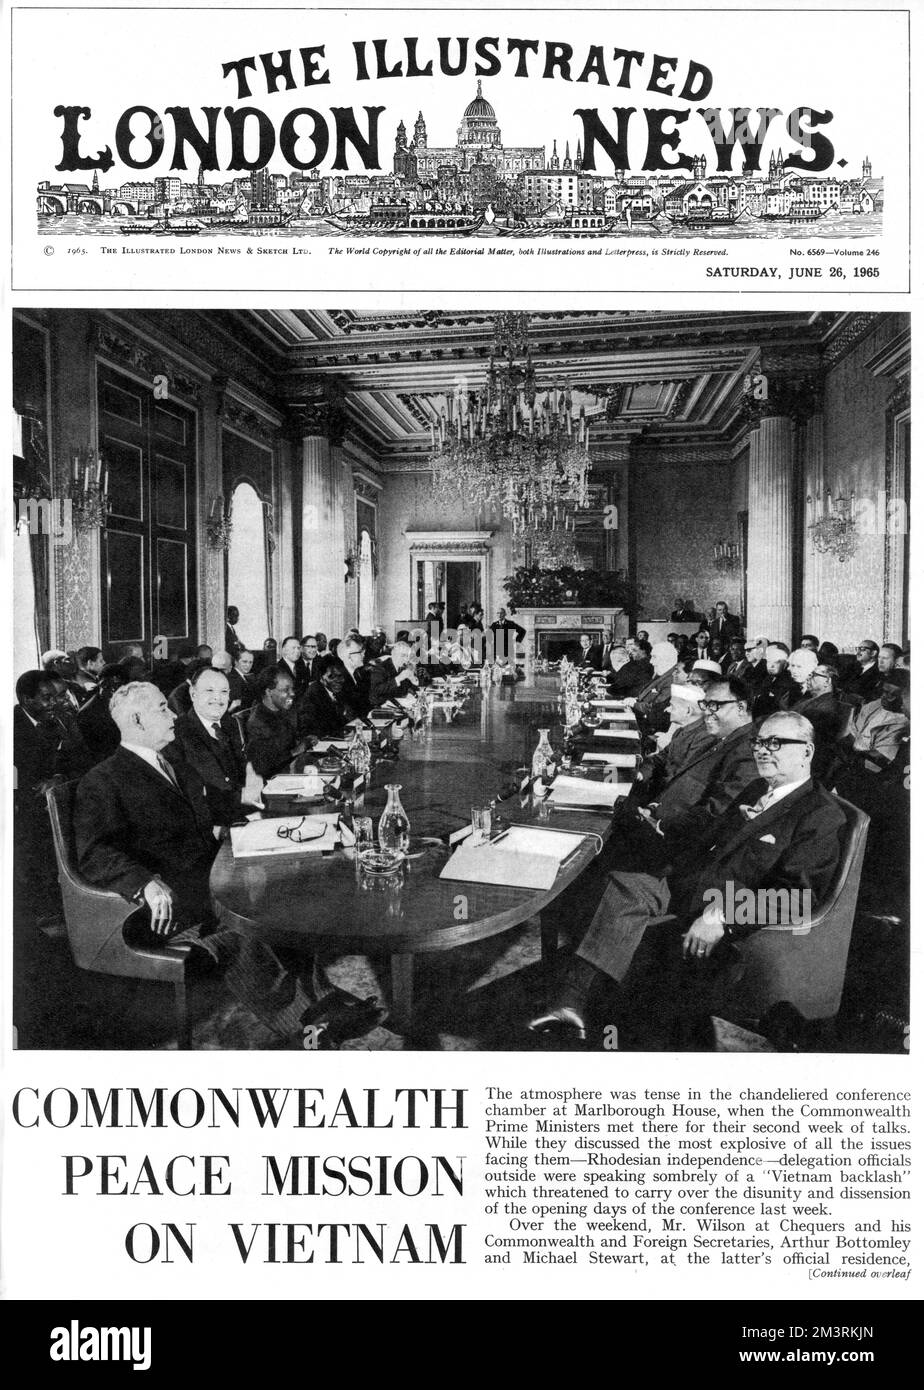 Eine Titelseite der illustrierten London News vom 26.. Juni 1965, die die Premierminister des Commonwealth zeigt, die zur Zeit des Vietnamkriegs im Malborough House versammelt waren. 1965 Stockfoto